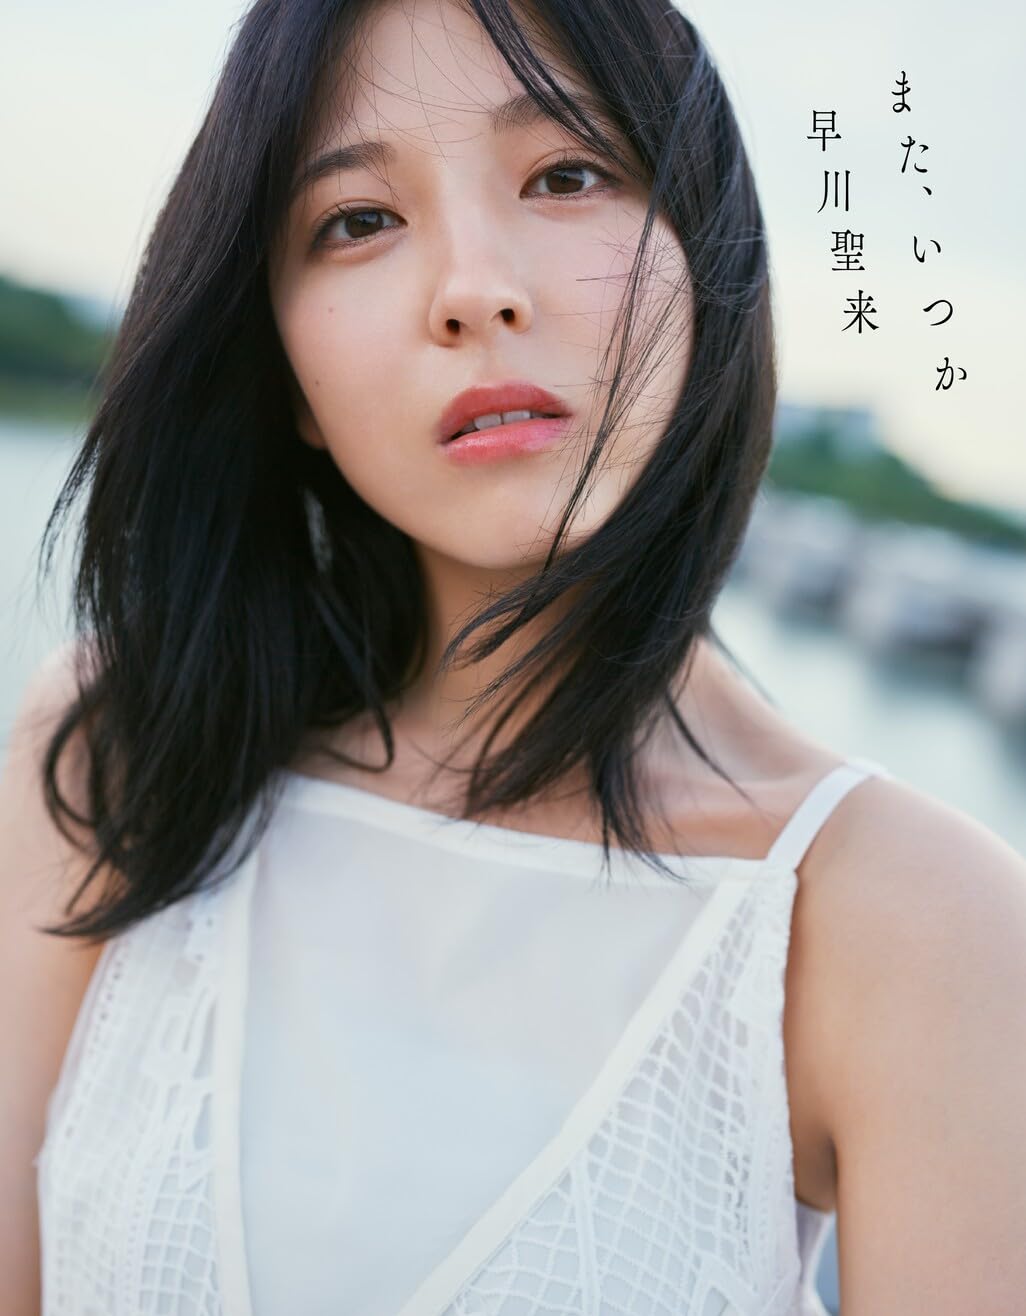 Hayakawa Seira Photo Book "mata itsuka" / Nogizaka46